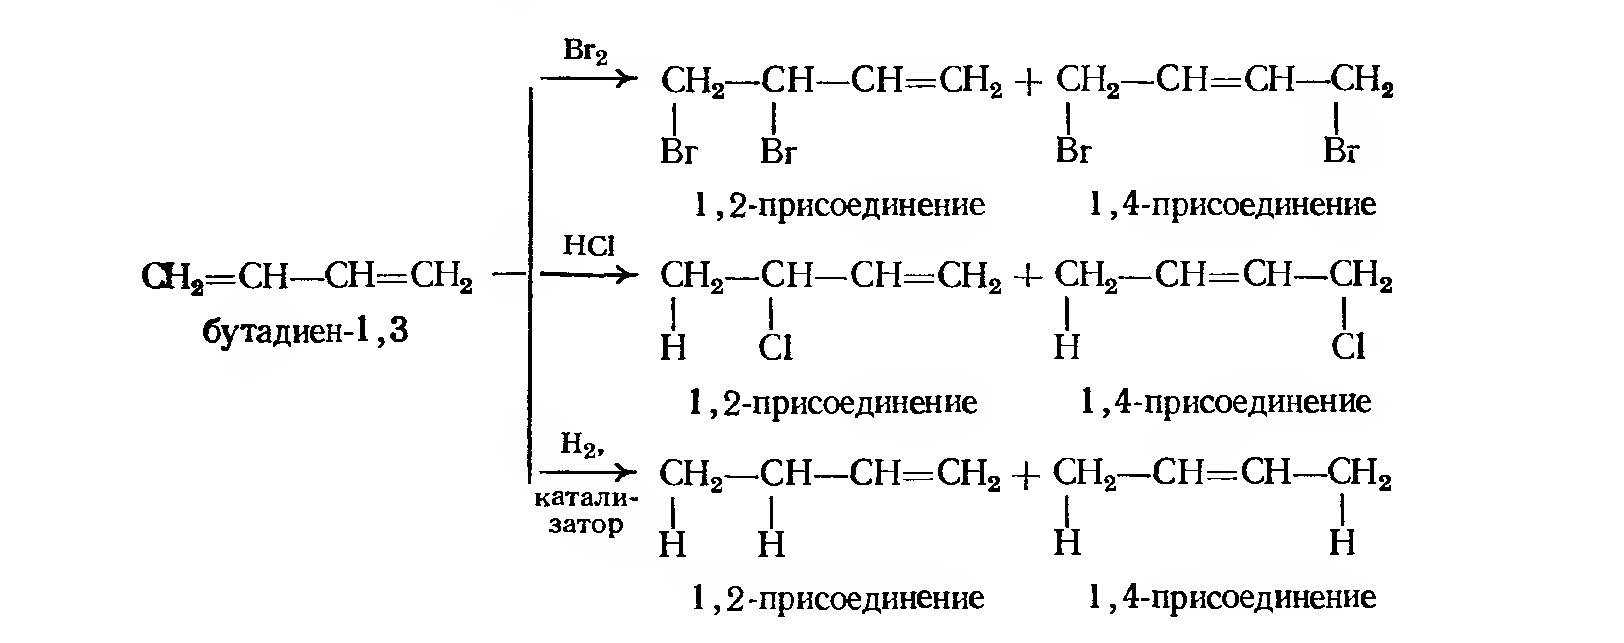 В отличие от бутадиена бутан. Схема полимеризации хлоропрена. Присоединение hbr к бутадиену 1,3. Гидробромирование бутадиена-1.3. Бутадиен 13 и бромоводород.